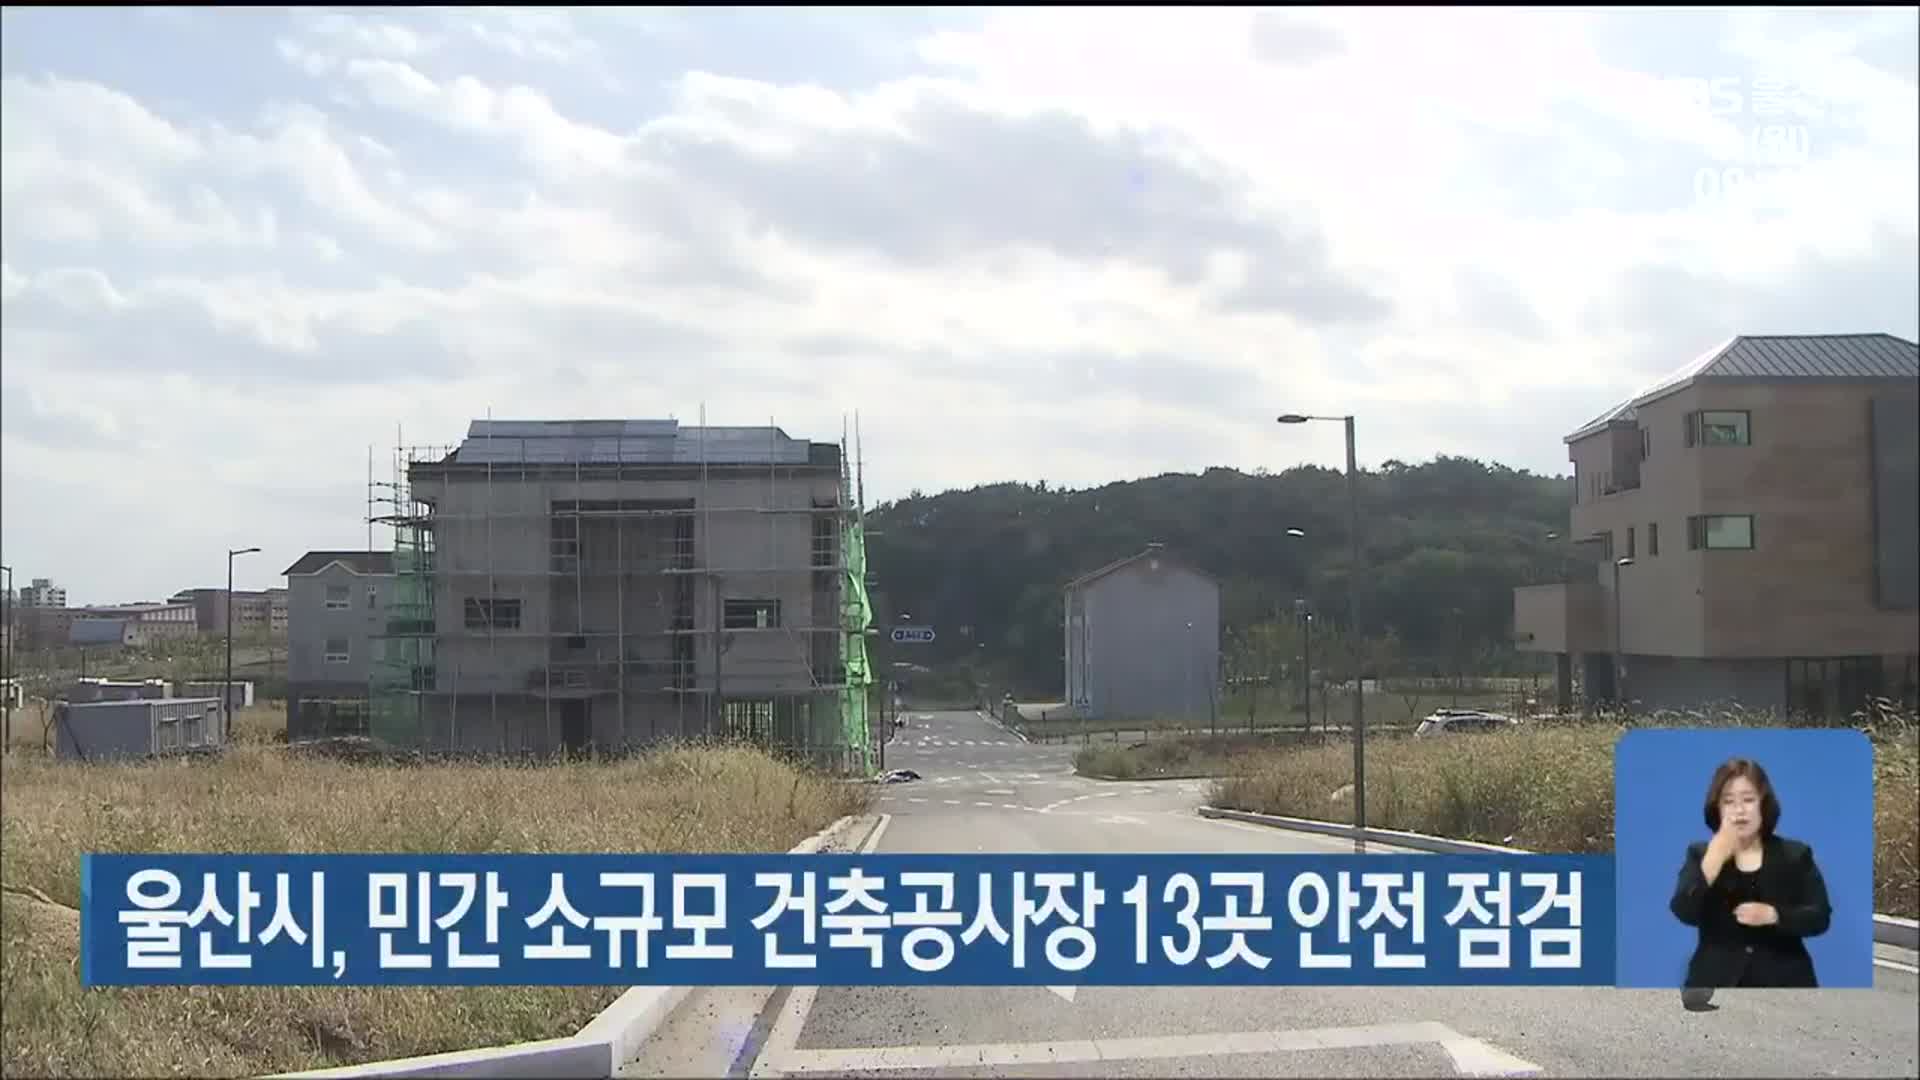 울산시, 민간 소규모 건축공사장 13곳 안전 점검